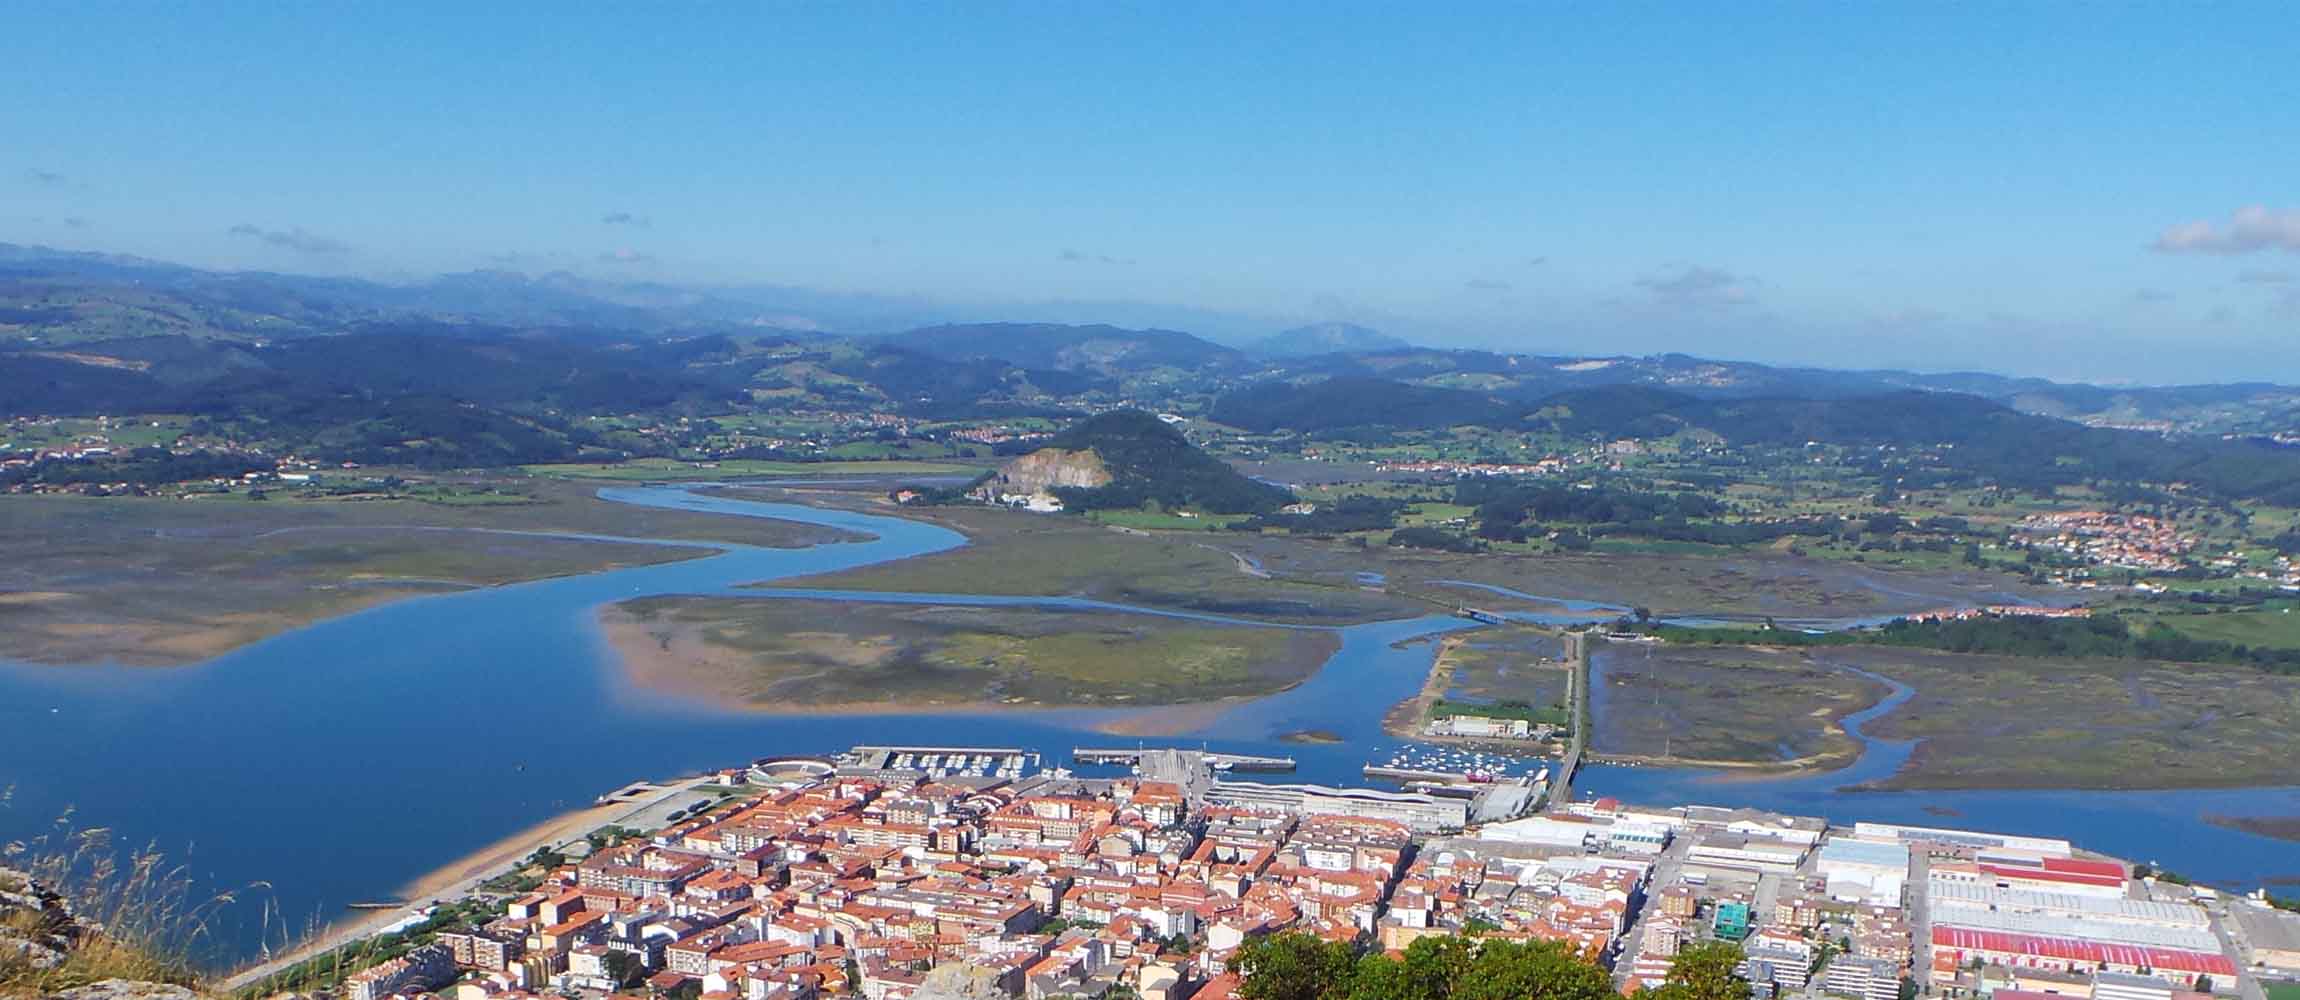 Vista de Santoña, cuna de las mejores anchoas (http://www.turismosantona.es/)